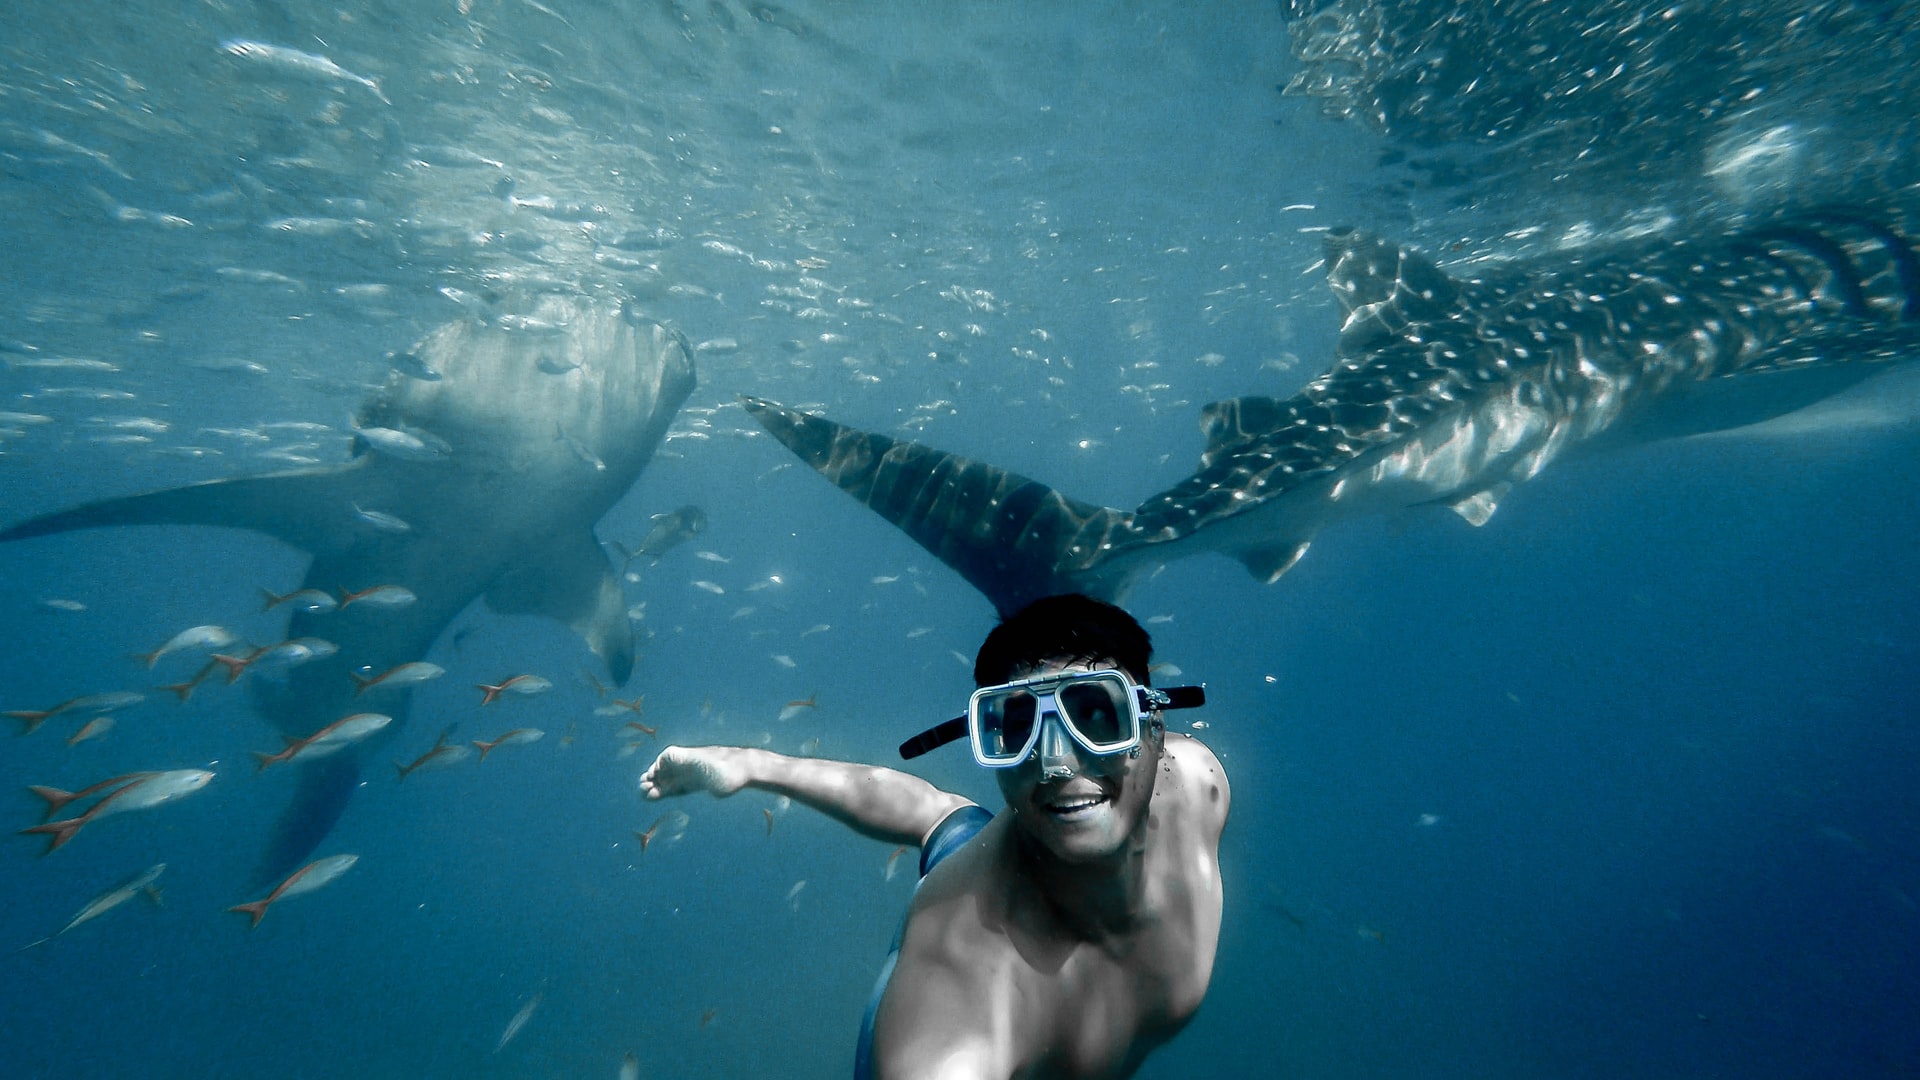 Nuotare con gli squali